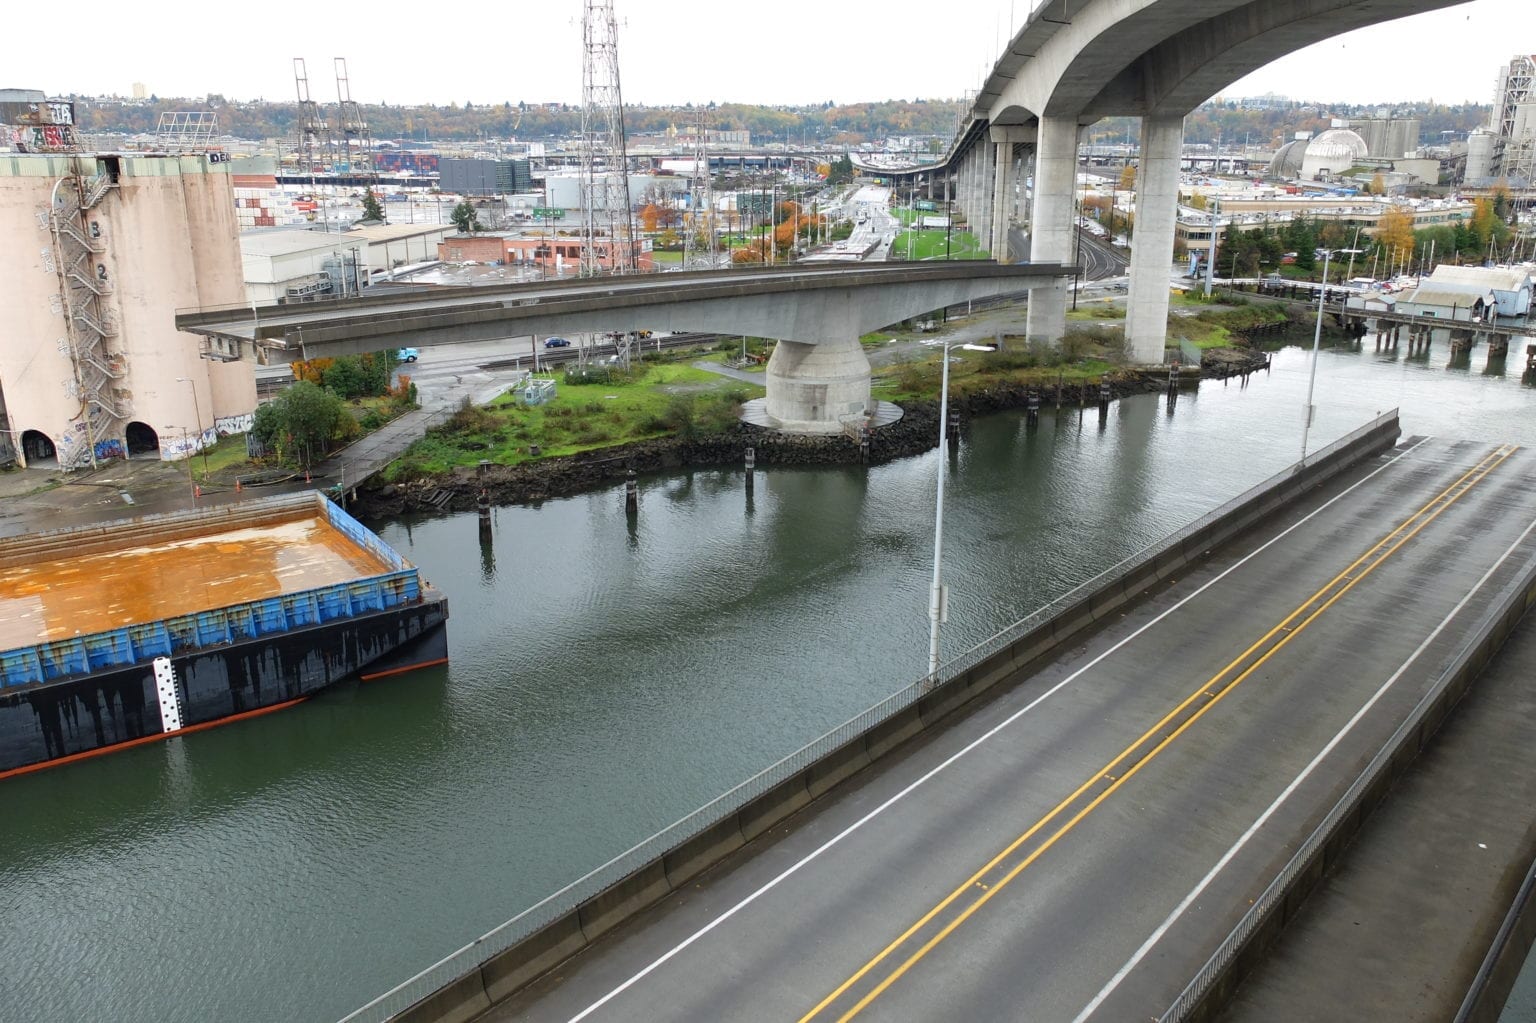 West Seattle Low Bridge, also known as Spokane St Swing Bridge, open for marine traffic.